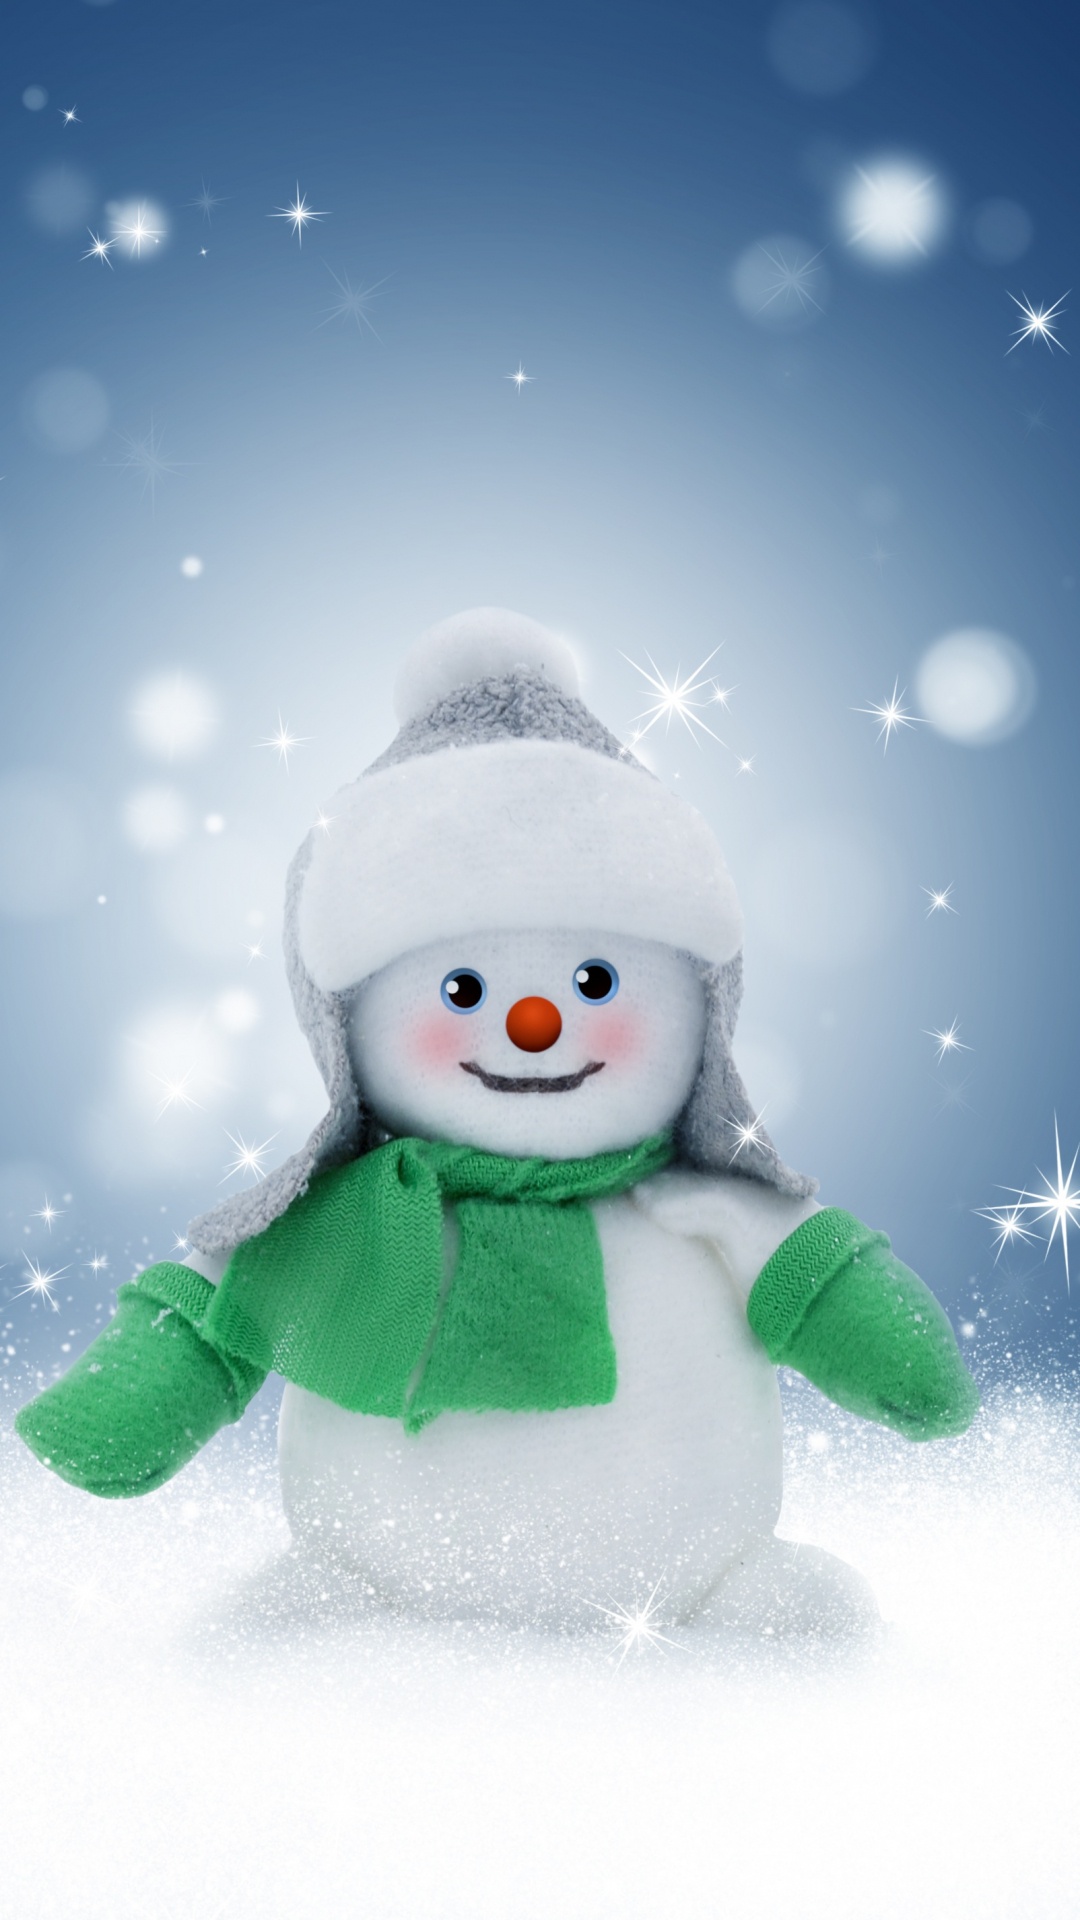 圣诞节那天, 冬天, 雪人, 圣诞前夕, 冻结 壁纸 1080x1920 允许